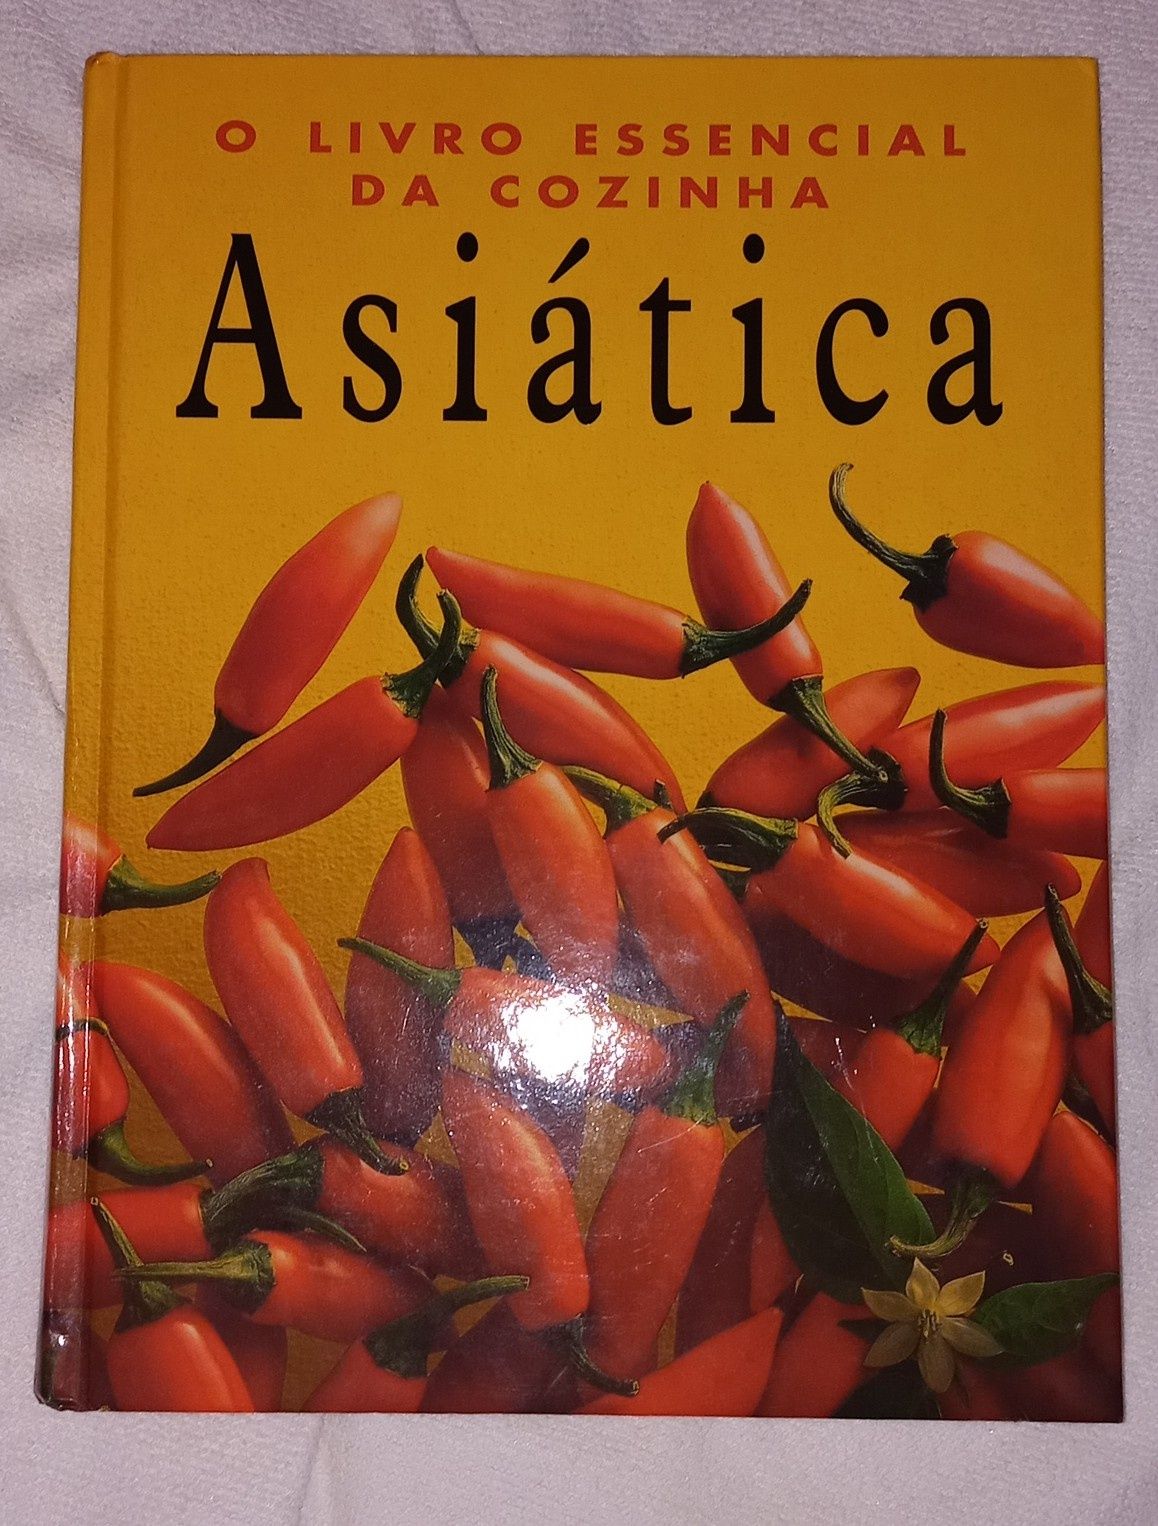 Livro da cozinha Asiatica